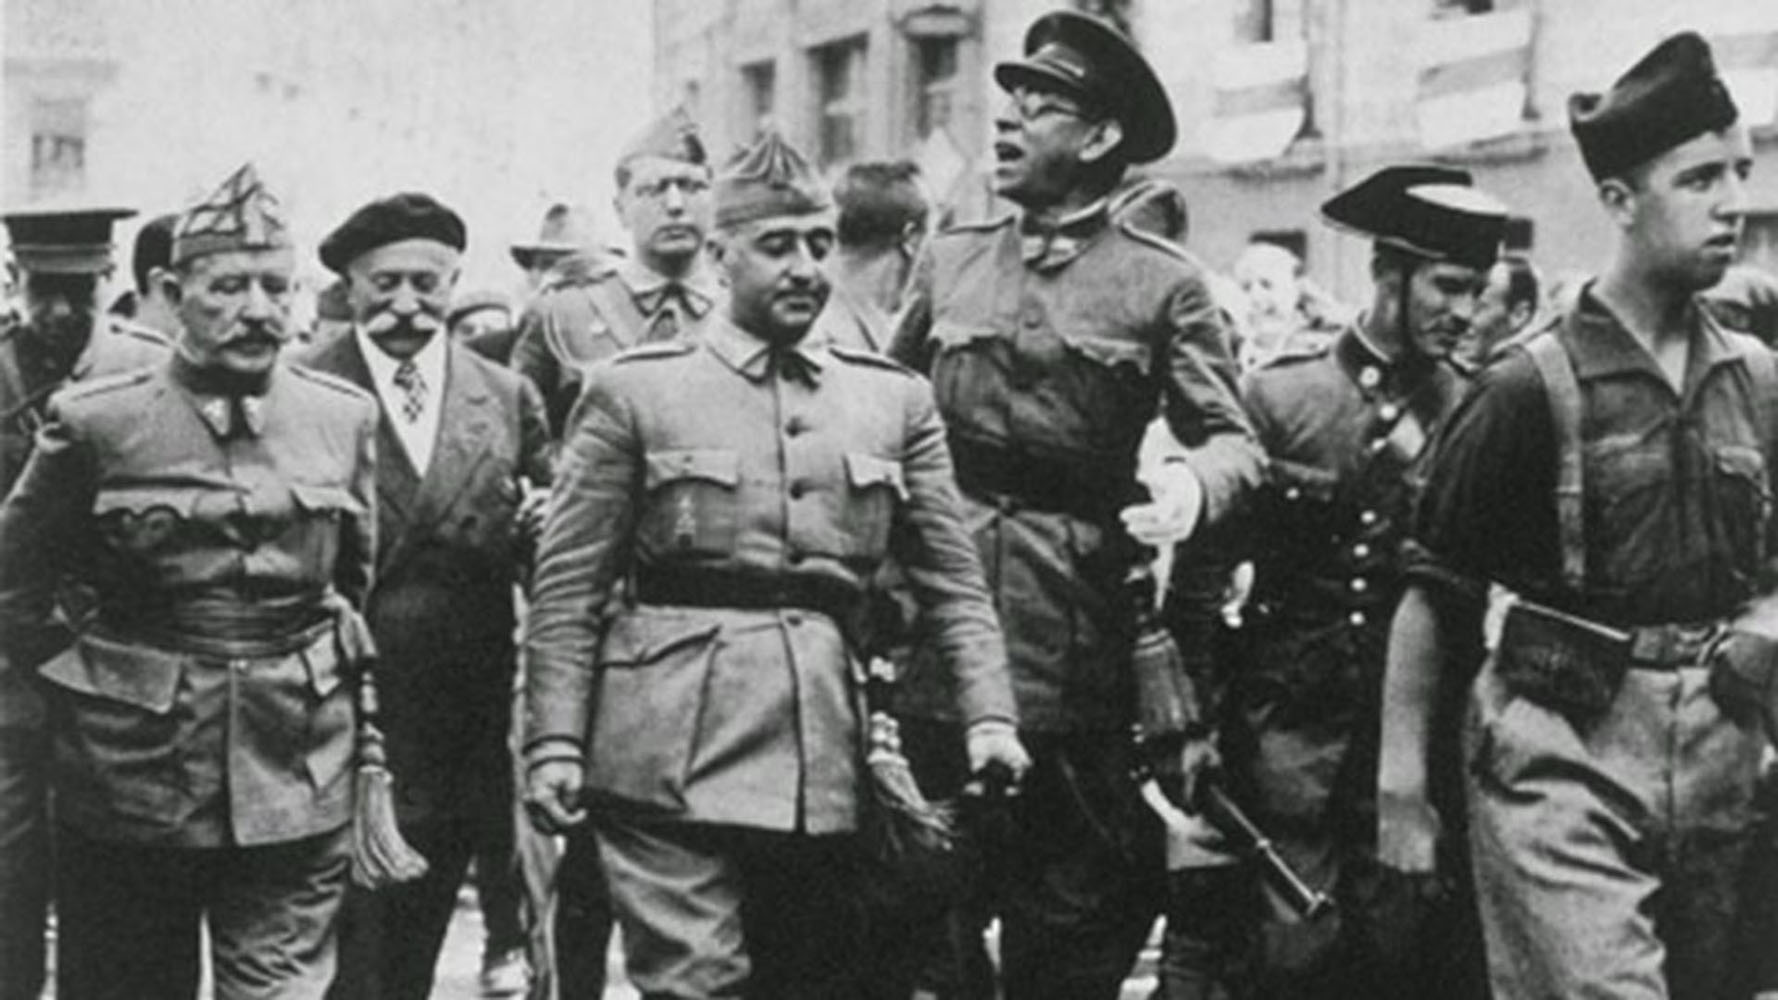 Franco y Roosevelt, relación en la Guerra Civil Española